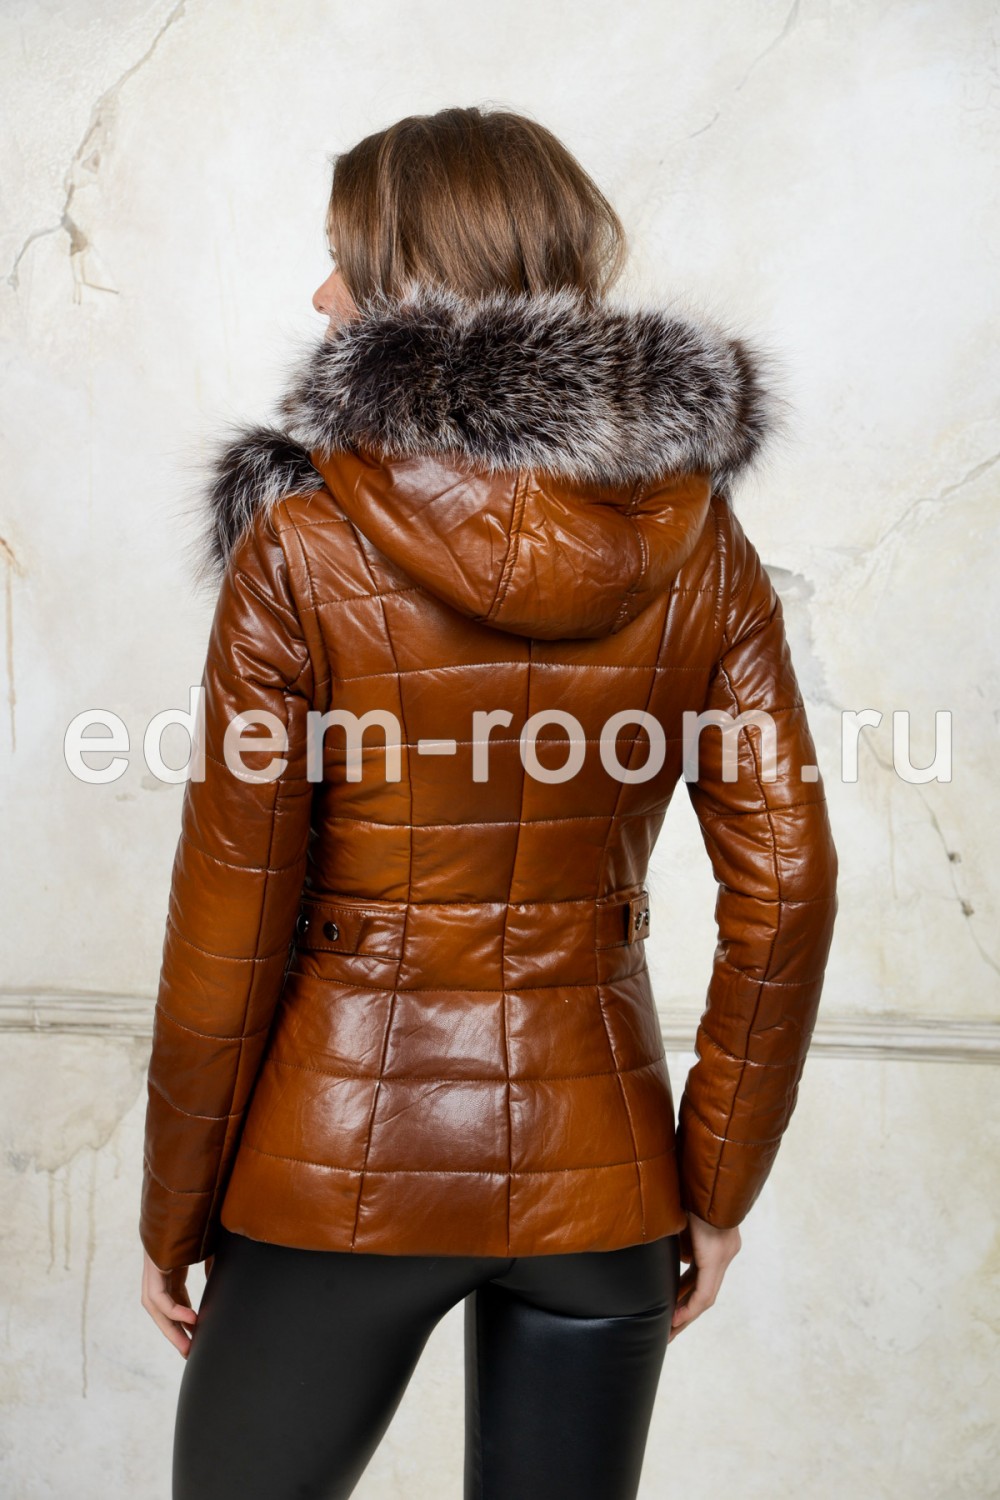 Куртка - жилетка из экокожи с мехом лисы